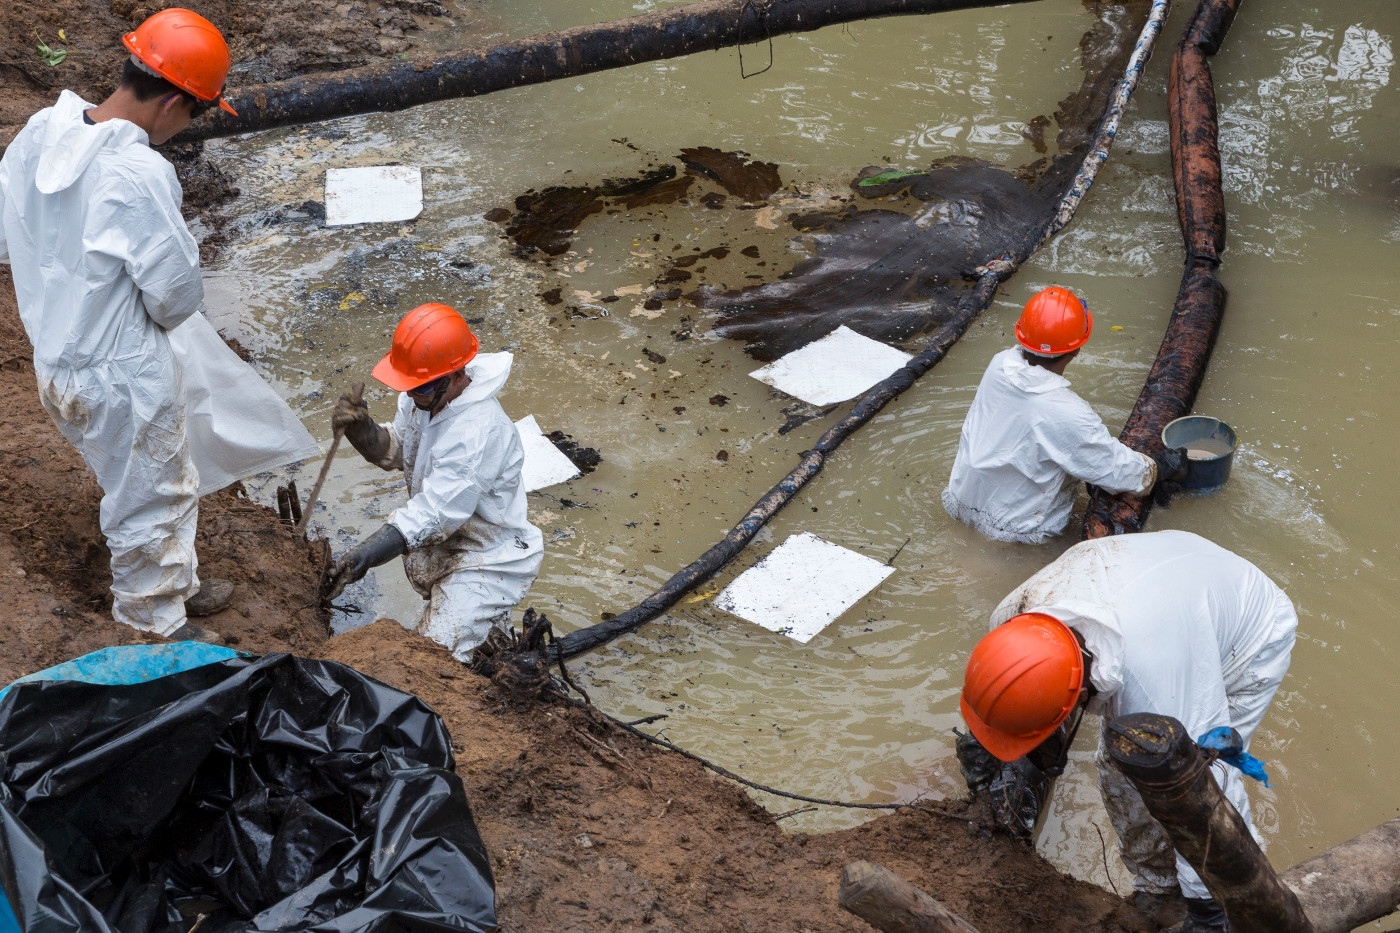 Arbeiter der Firma Pedroperu versuchen, die Umweltschäden zu beseitigen, die in der peruanischen Amazonasregion Chiriaco durch ein Ölpipeline-Leck entstanden sind. Foto (Symbolfoto): Adveniat/Jürgen Escher